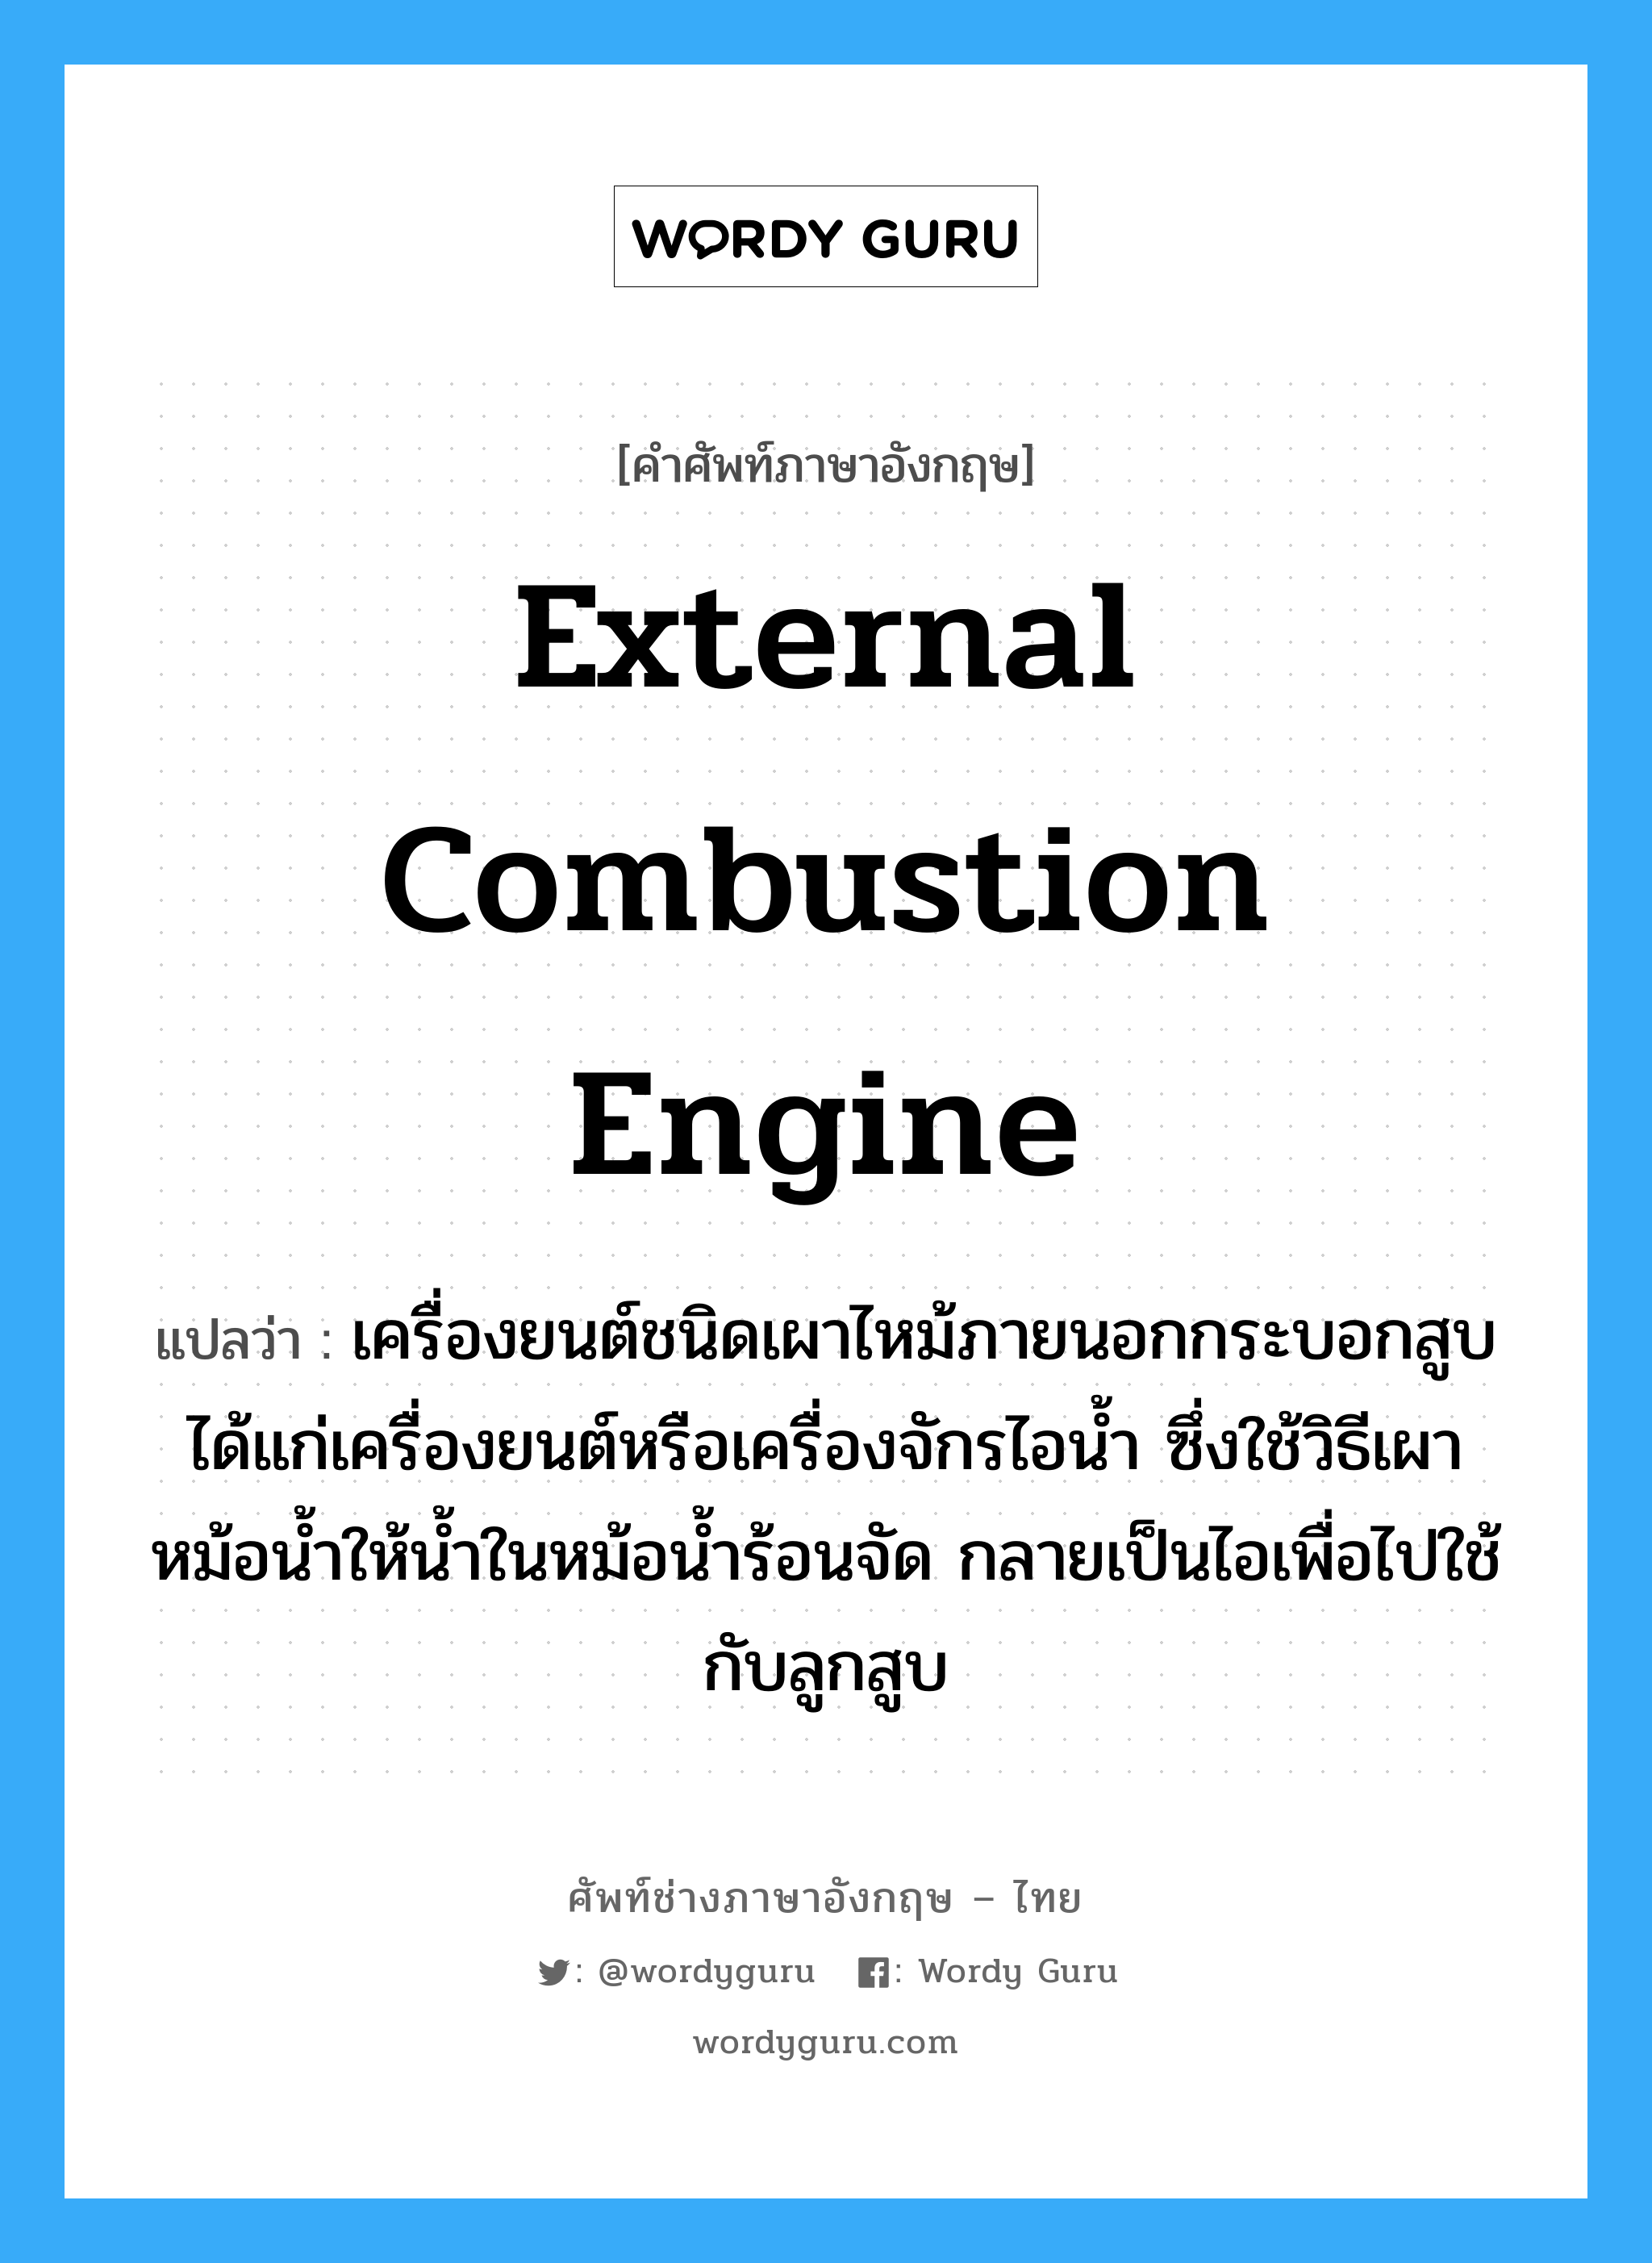 external combustion engine แปลว่า?, คำศัพท์ช่างภาษาอังกฤษ - ไทย external combustion engine คำศัพท์ภาษาอังกฤษ external combustion engine แปลว่า เครื่องยนต์ชนิดเผาไหม้ภายนอกกระบอกสูบ ได้แก่เครื่องยนต์หรือเครื่องจักรไอน้ำ ซึ่งใช้วิธีเผาหม้อน้ำให้น้ำในหม้อน้ำร้อนจัด กลายเป็นไอเพื่อไปใช้กับลูกสูบ